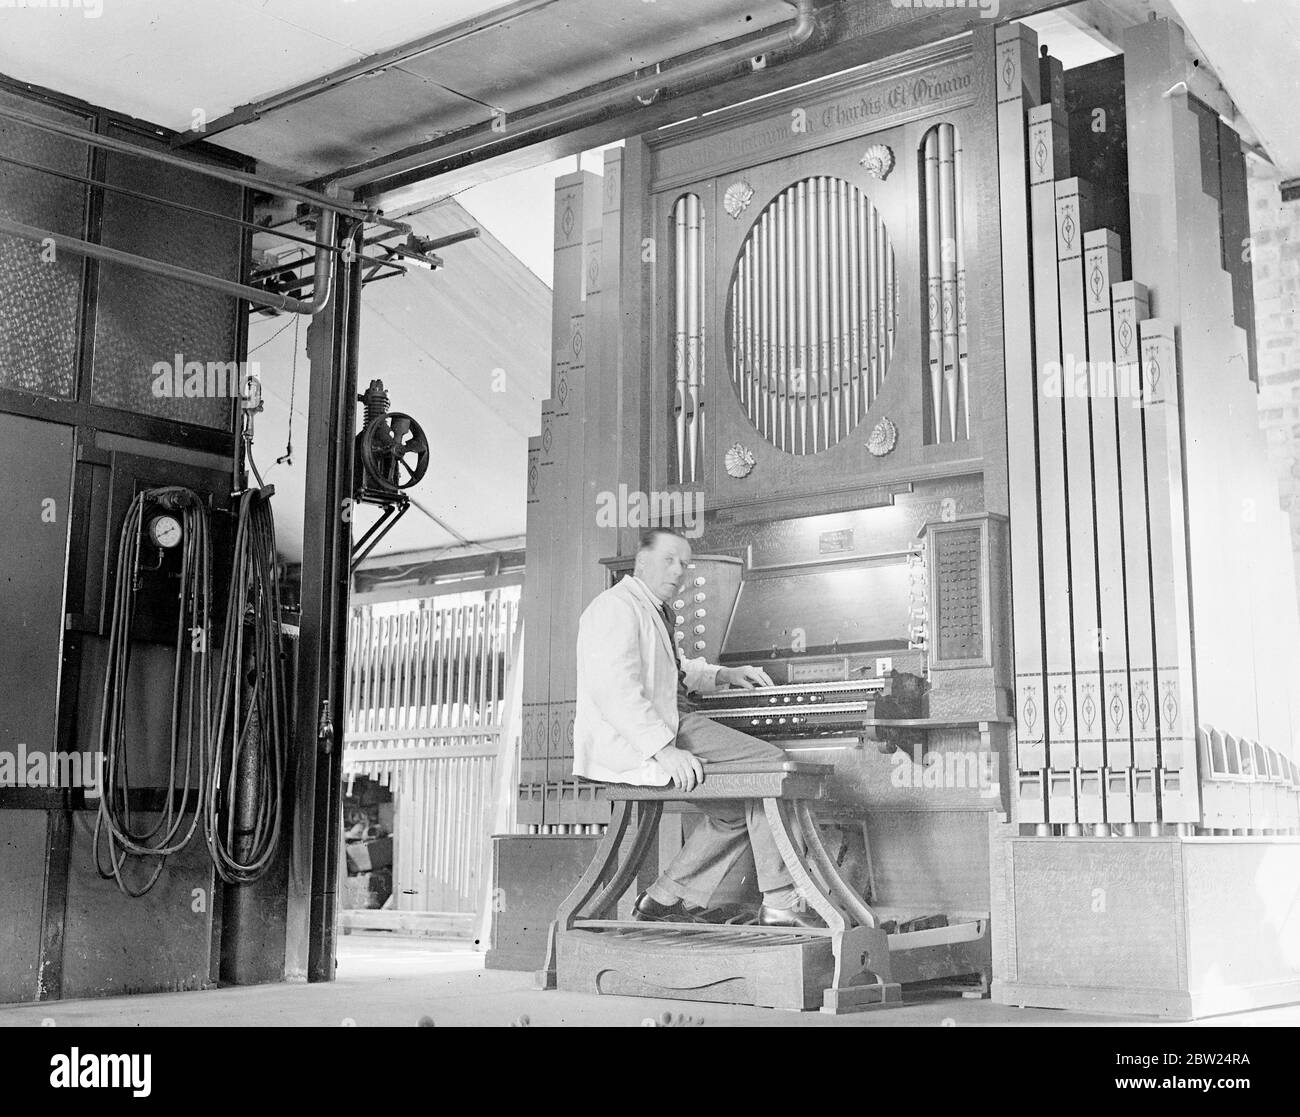 L'ingénieur automobile construit un orgue avec 550 tuyaux dans son garage. Sans aucune formation, M. HT Adams, un ingénieur automobile de Ham Surrey, a construit un orgue dans son garage comme une occupation de temps libre. L'orgue, qui est de 12 pieds de haut, a environ 550 tuyaux, et à l'exception de la console a été construit sans plans. 5 septembre 1938 Banque D'Images